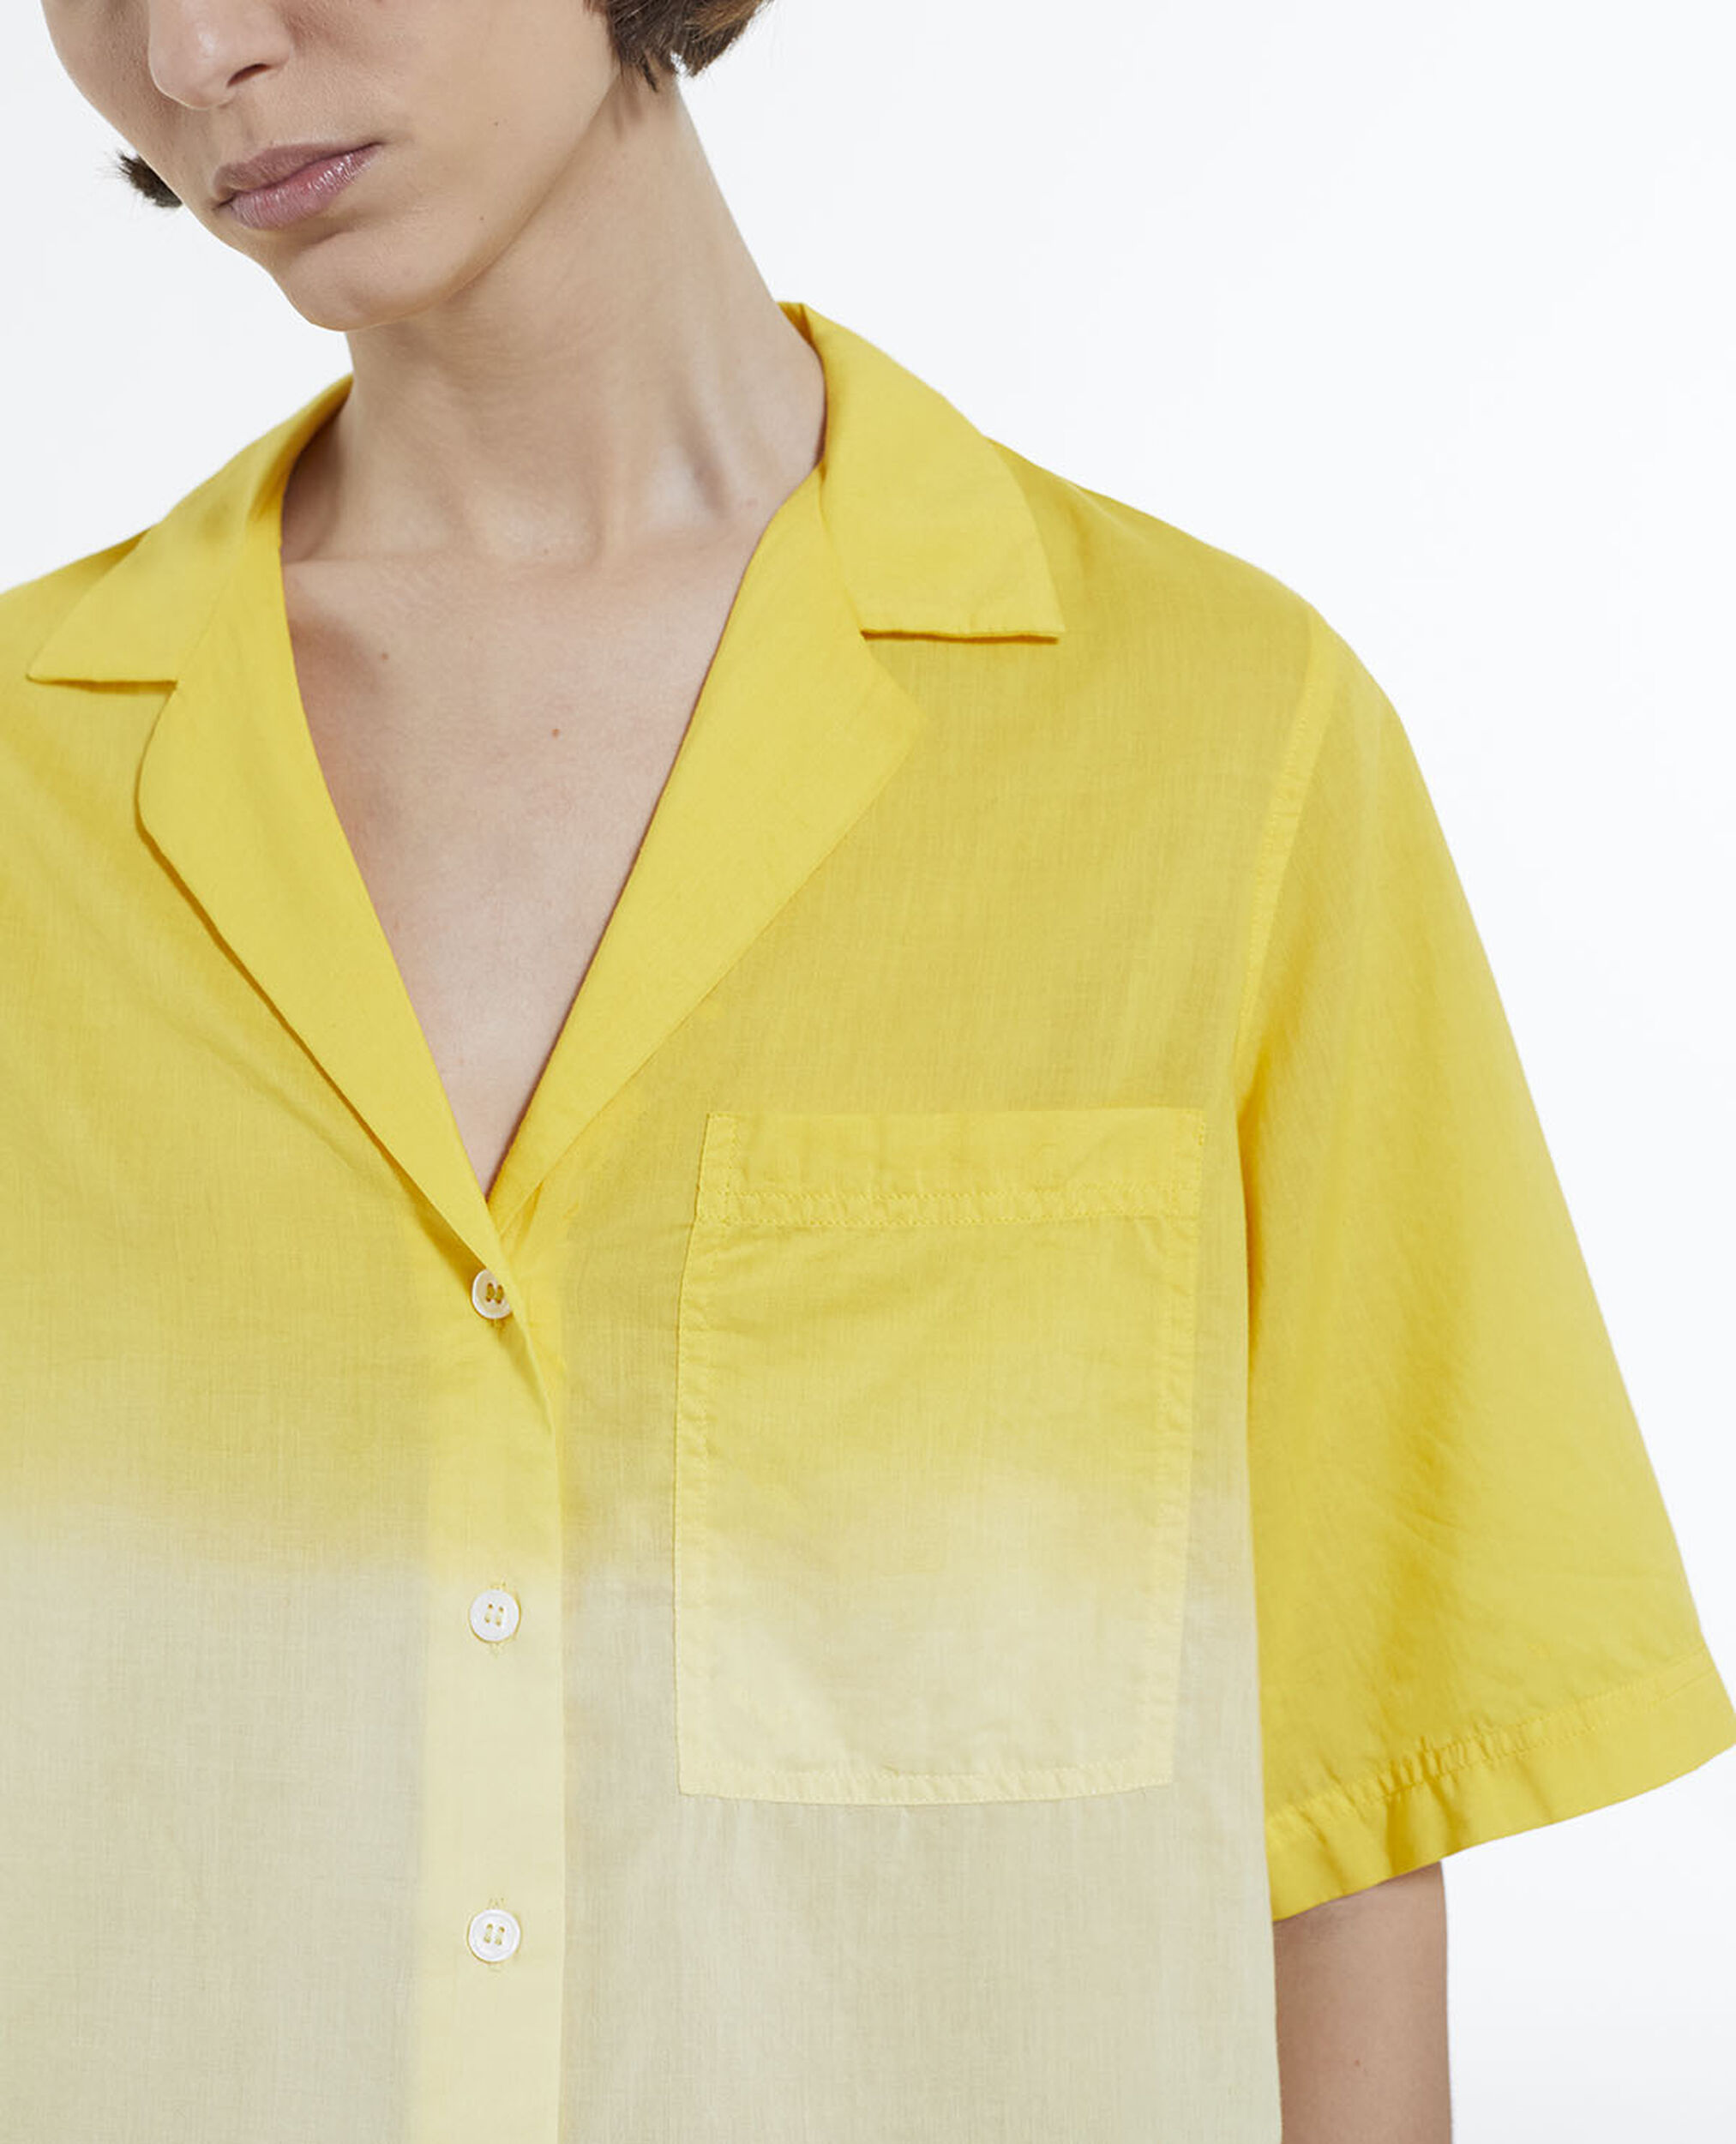 Camisa mujer algodón hawaiano tie - dye, YELLOW MELANGE, hi-res image number null